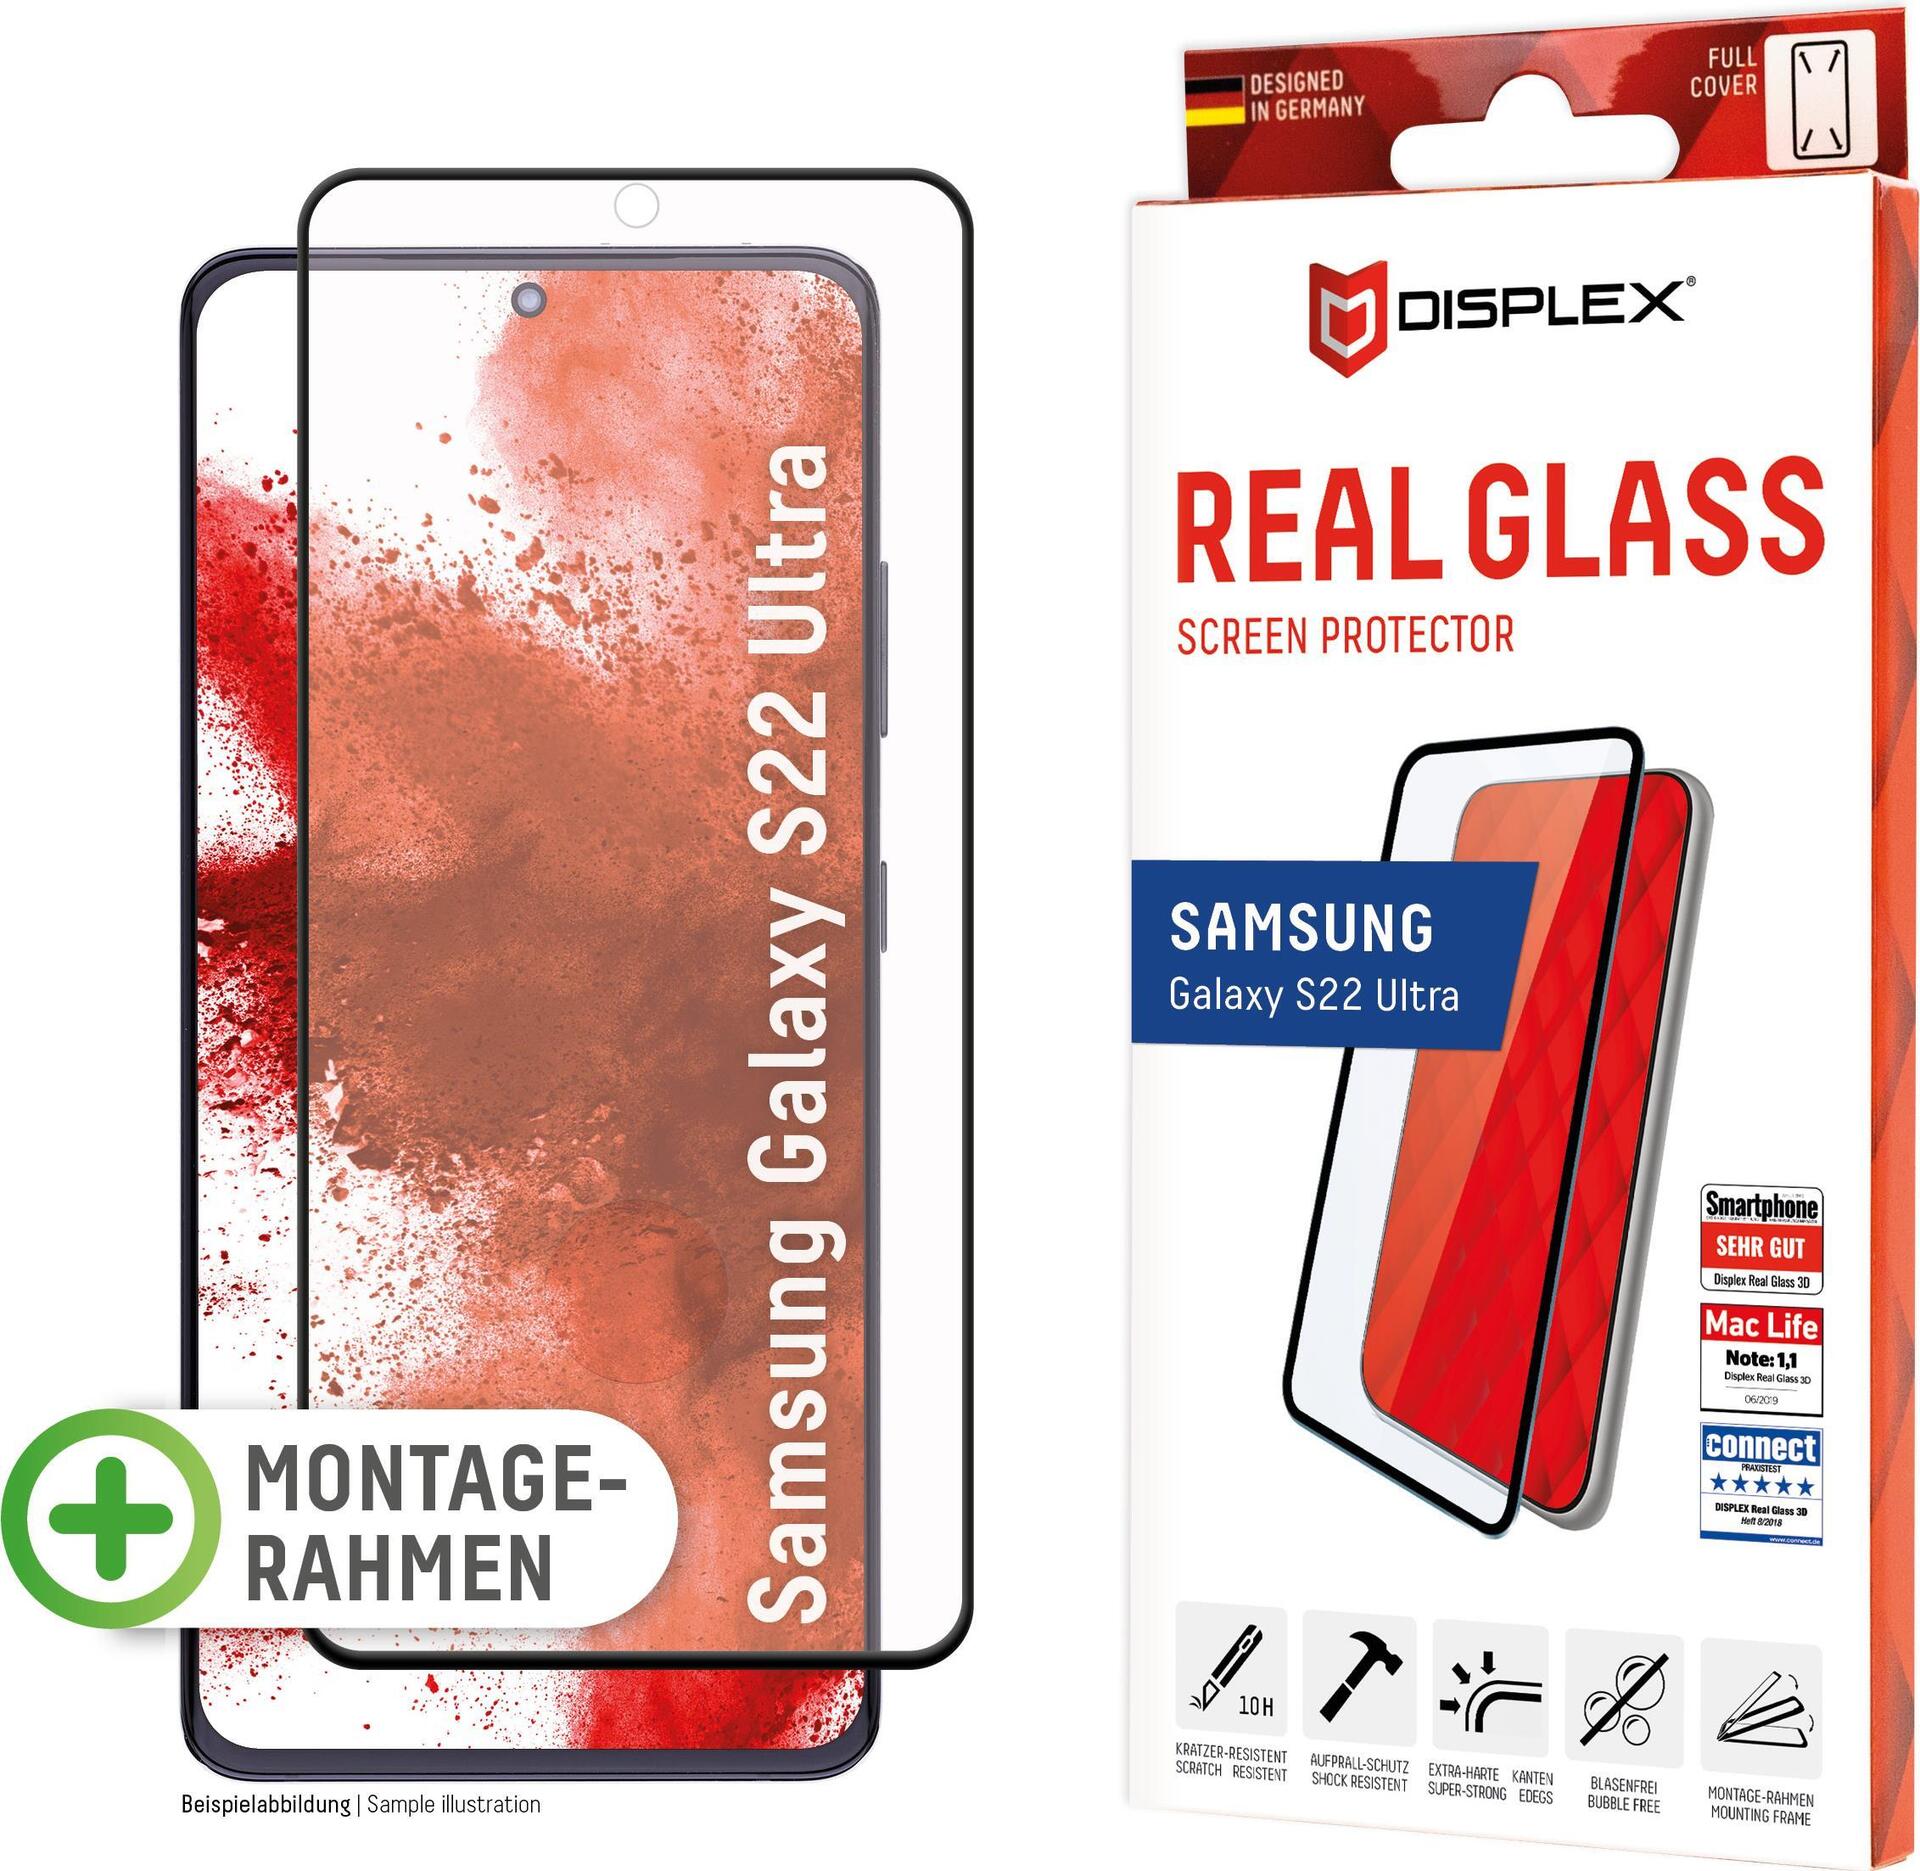 E.V.I. DISPLEX Real Glass – Bildschirmschutz für Handy – volle Abdeckung – 3D – Glas – Rahmenfarbe schwarz – für Samsung Galaxy S21 FE 5G (01469)